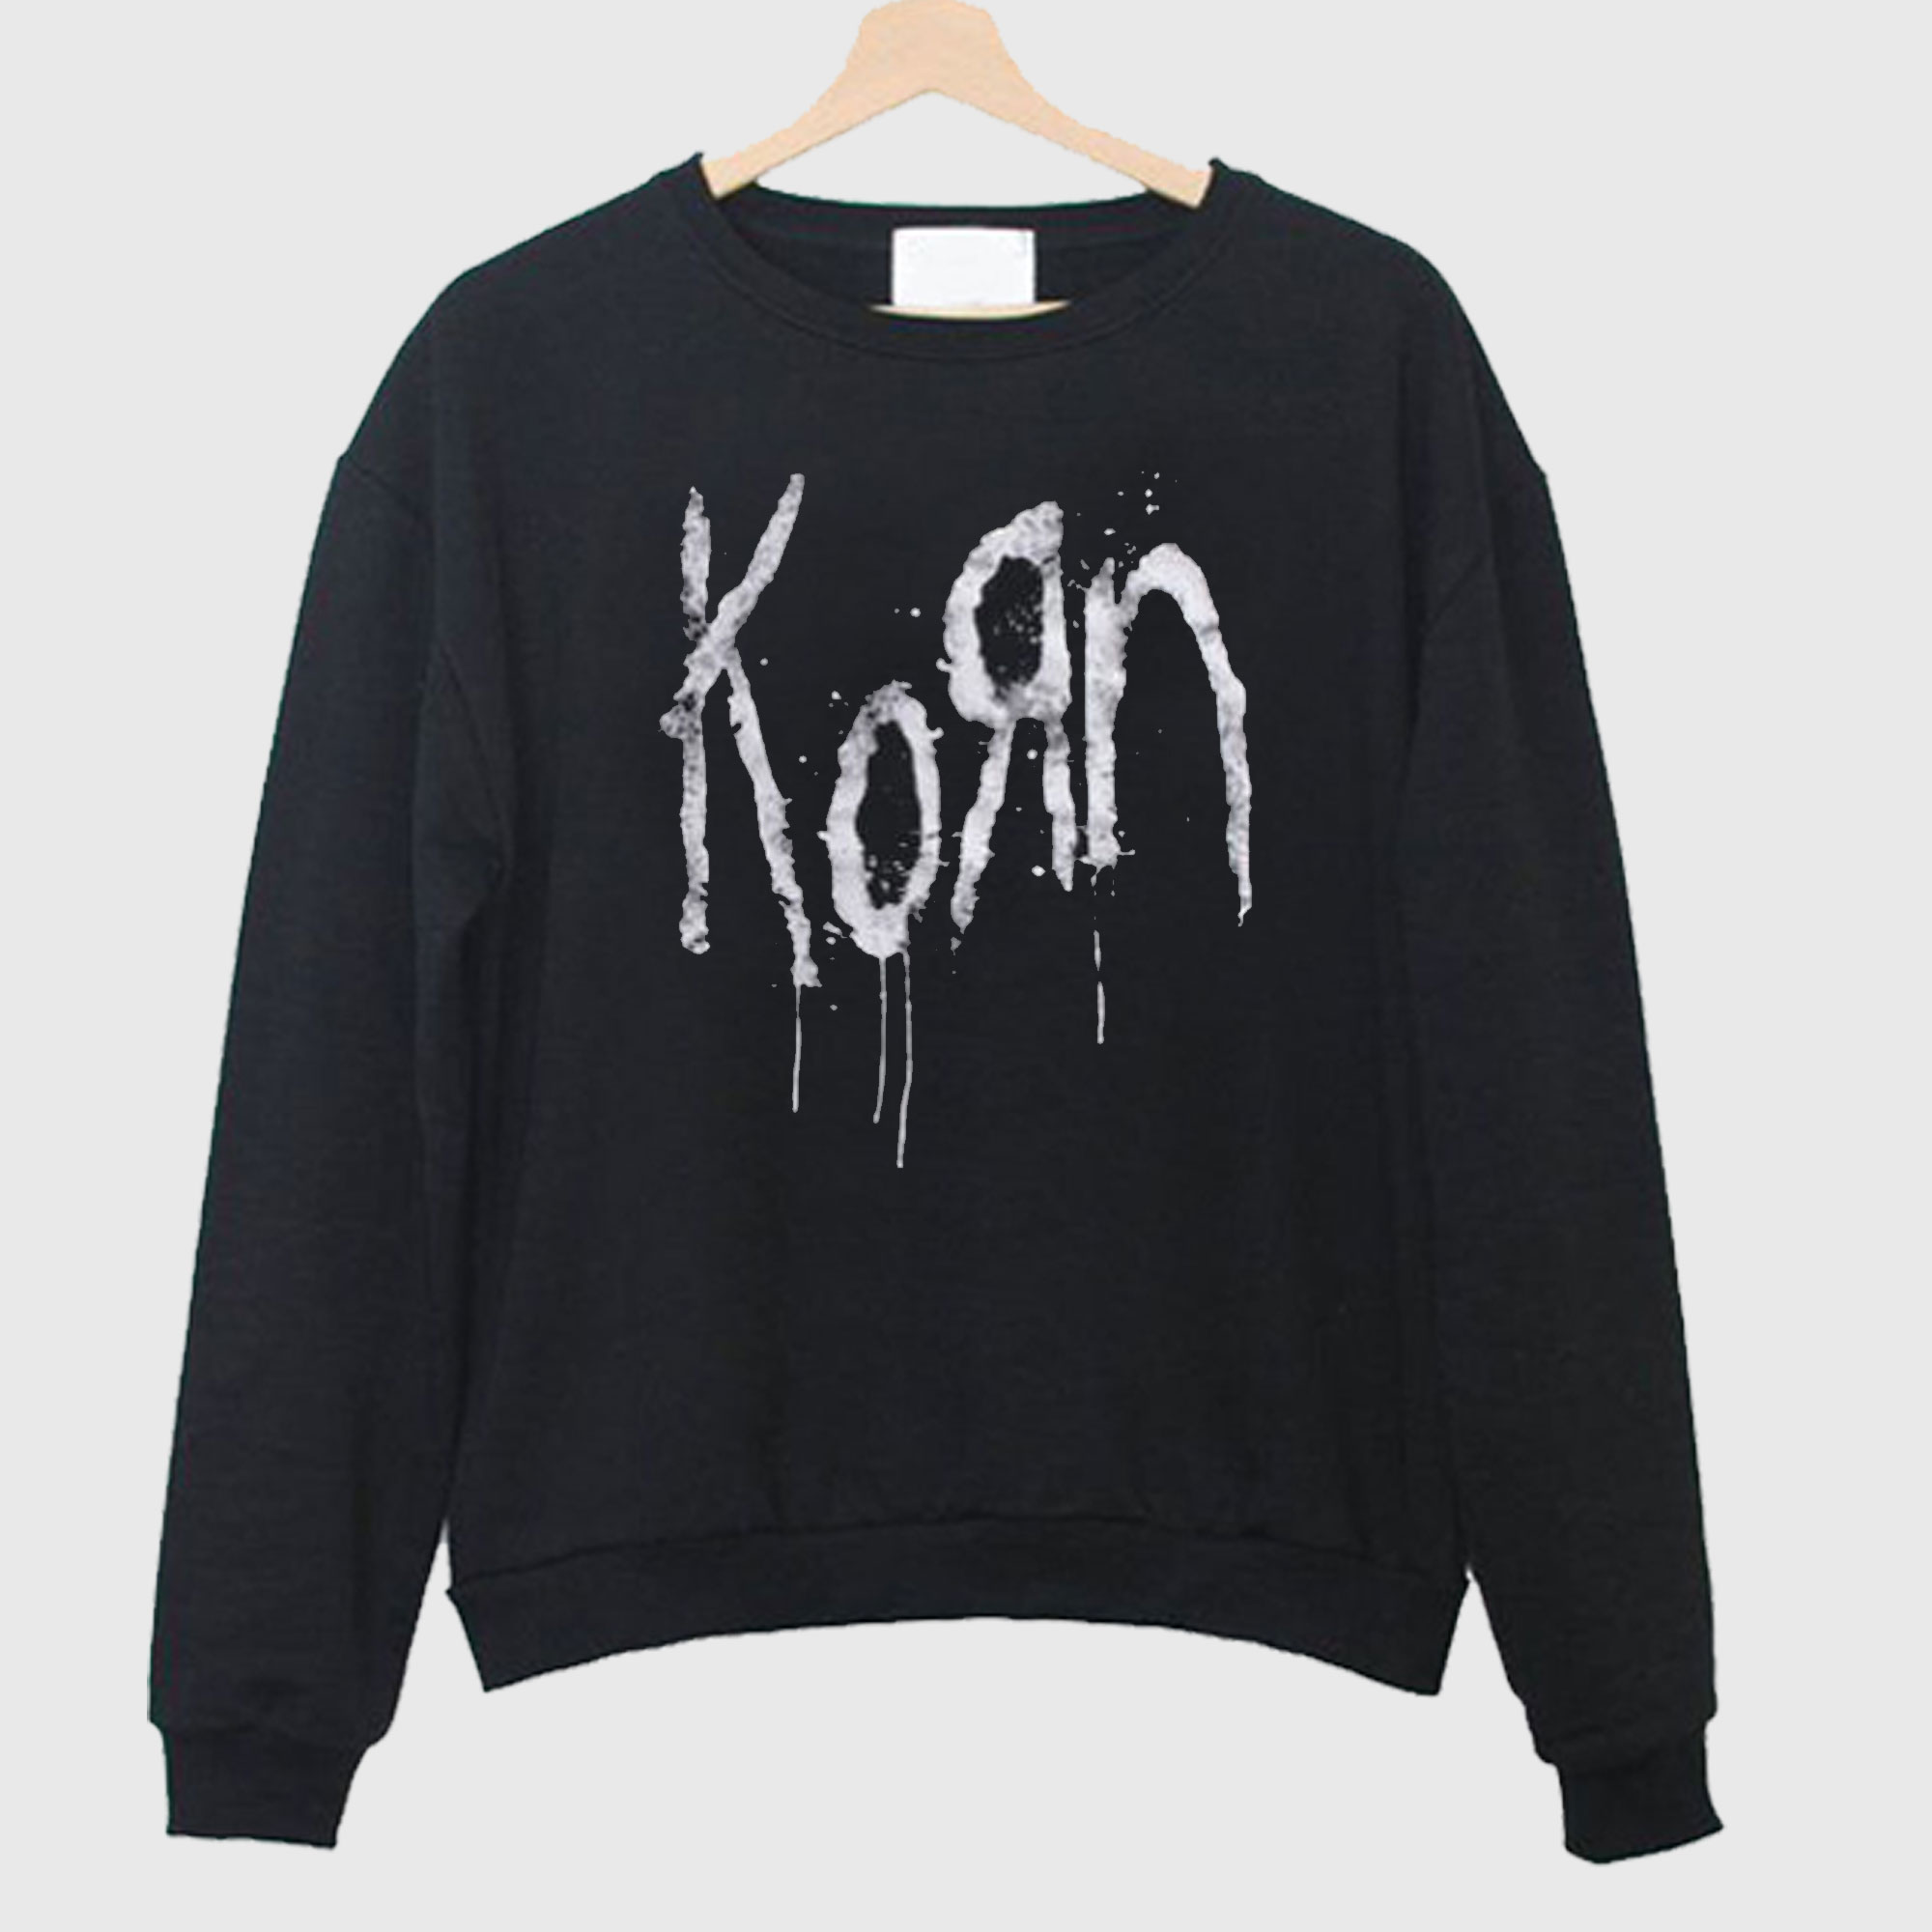 Korn Still a Freak Sweatshirt